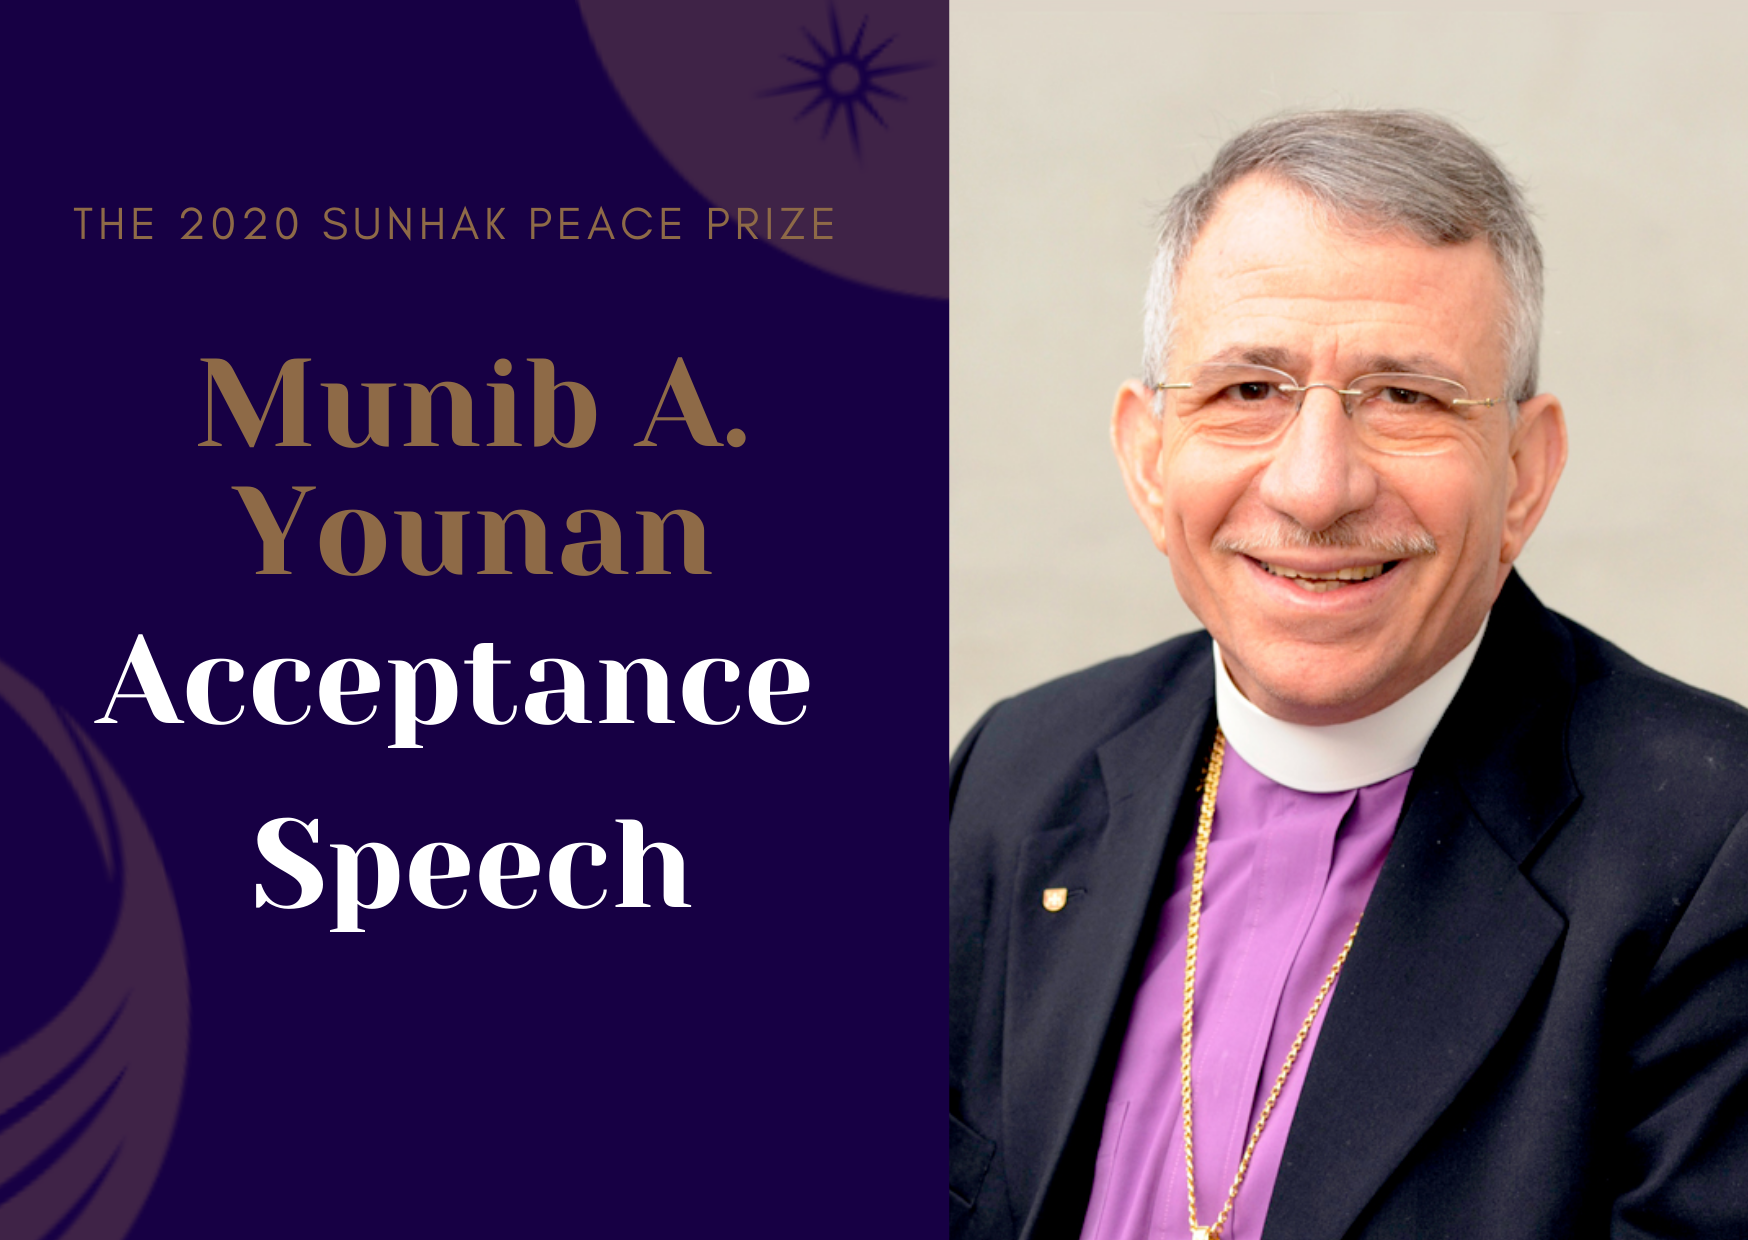 Munib Younan Acceptance Speech 썸네일